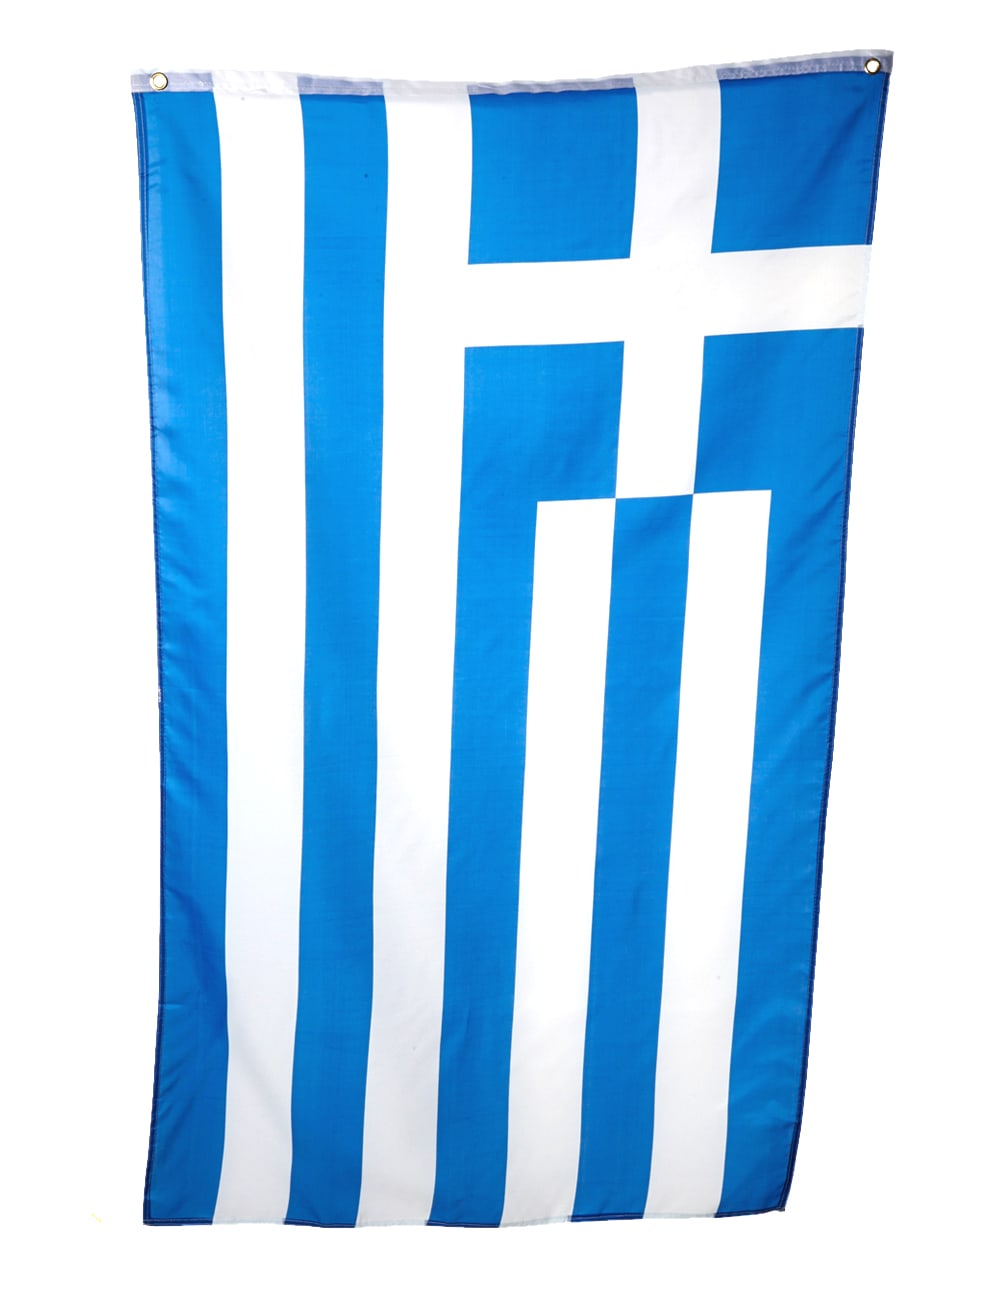 Griechenland Flagge 150x90cm jetzt HIER kaufen » Deiters